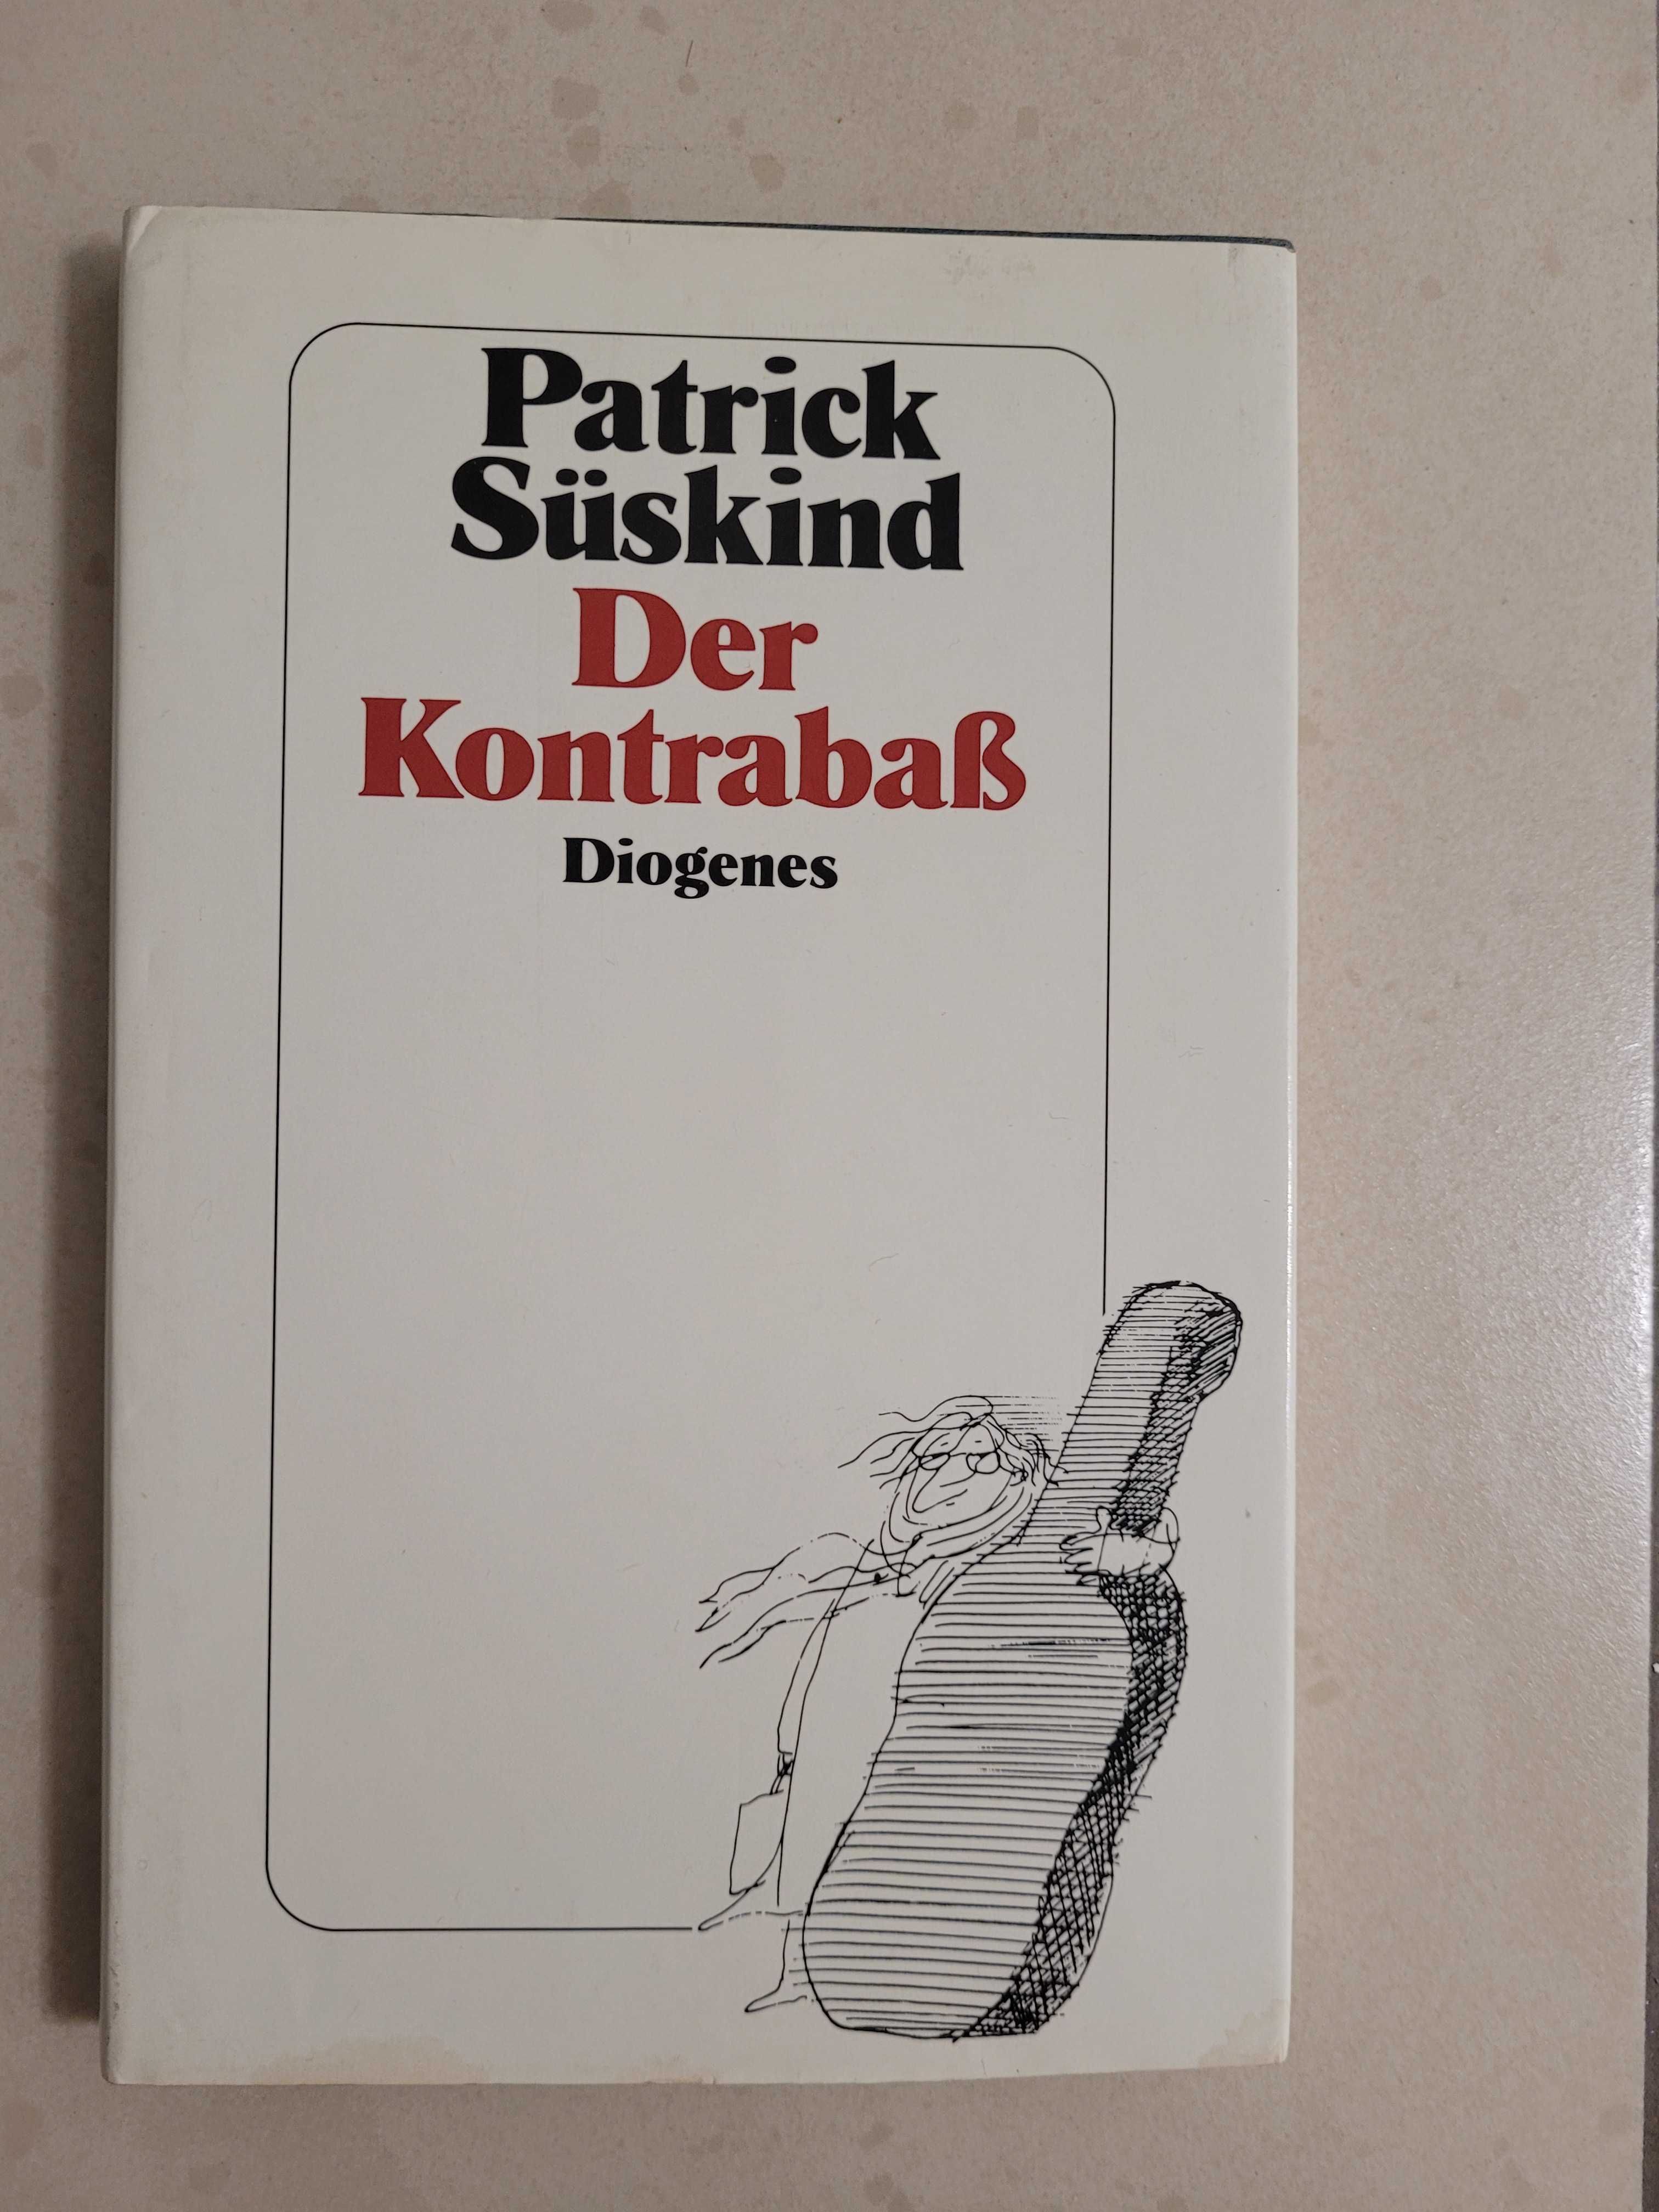 Książka niemieckojęzyczna "Der Kontrabass"